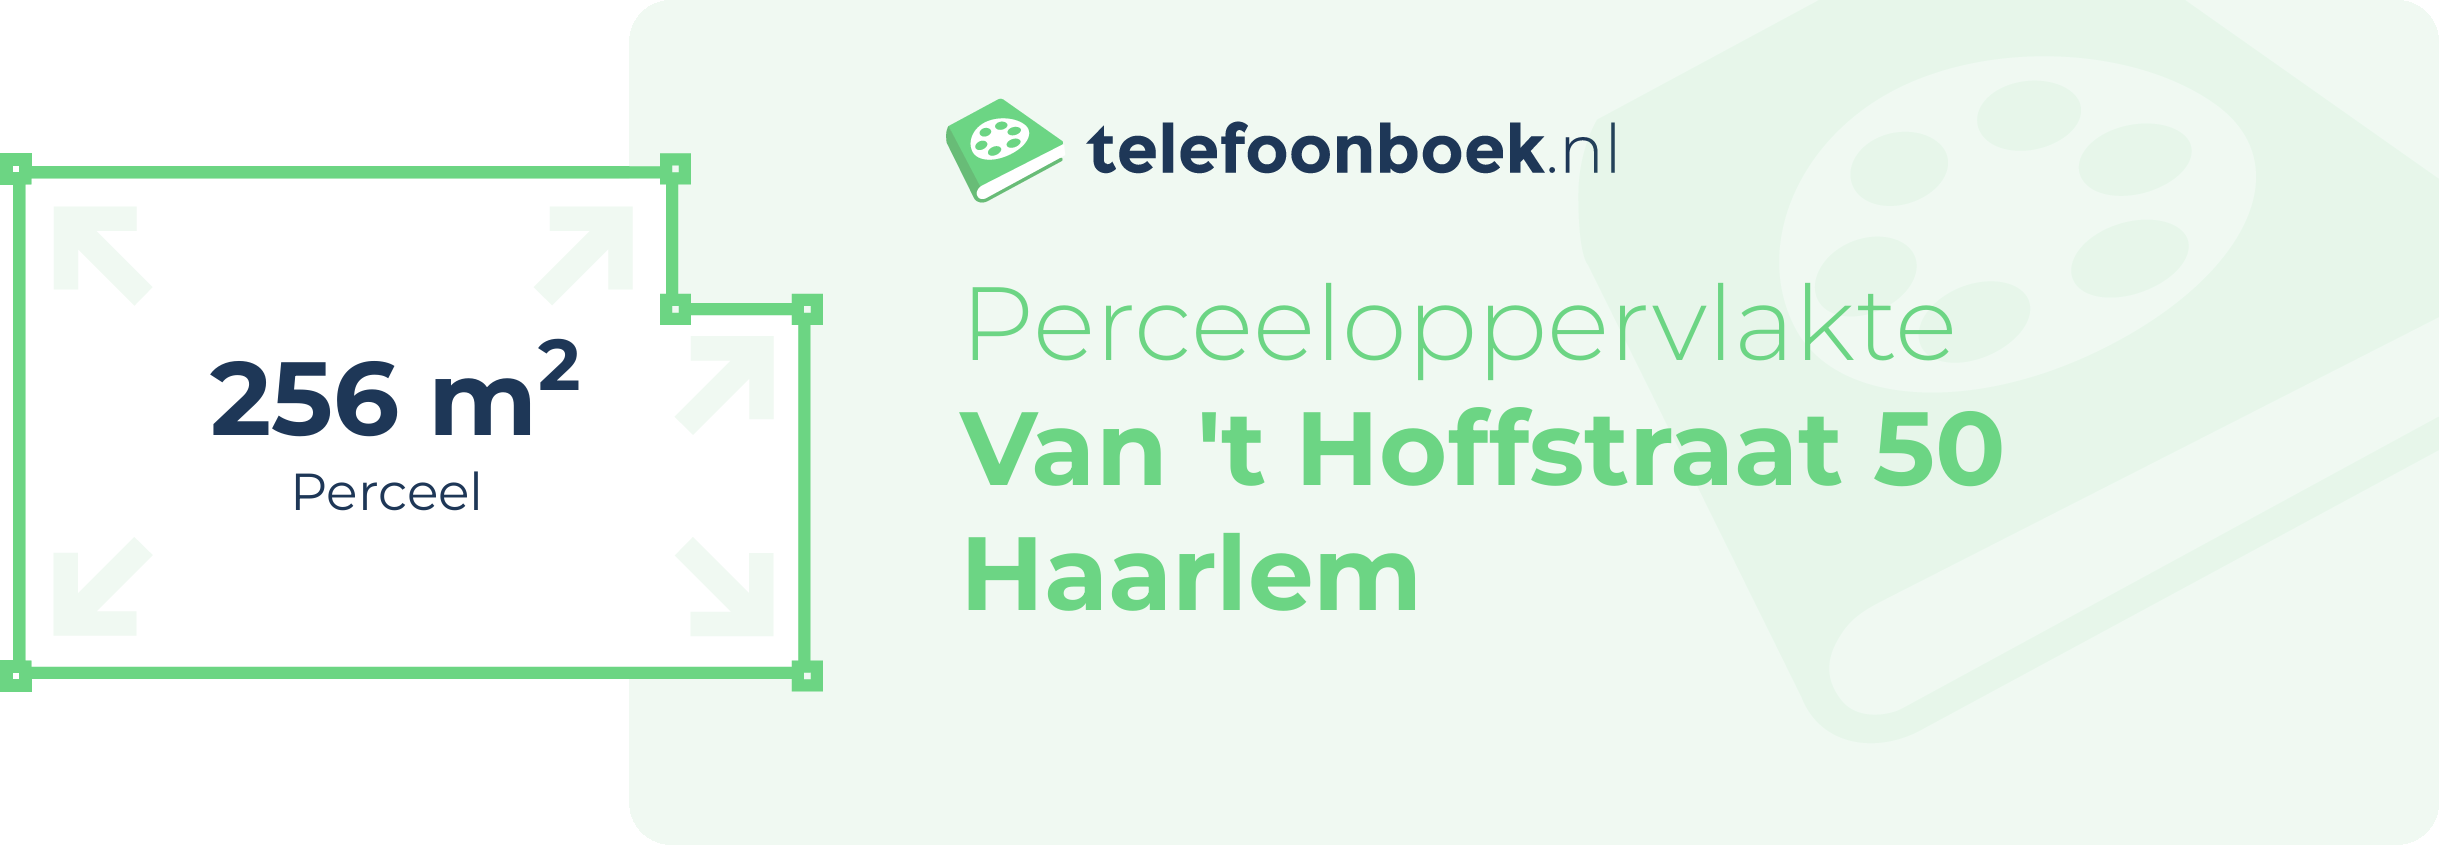 Perceeloppervlakte Van 't Hoffstraat 50 Haarlem